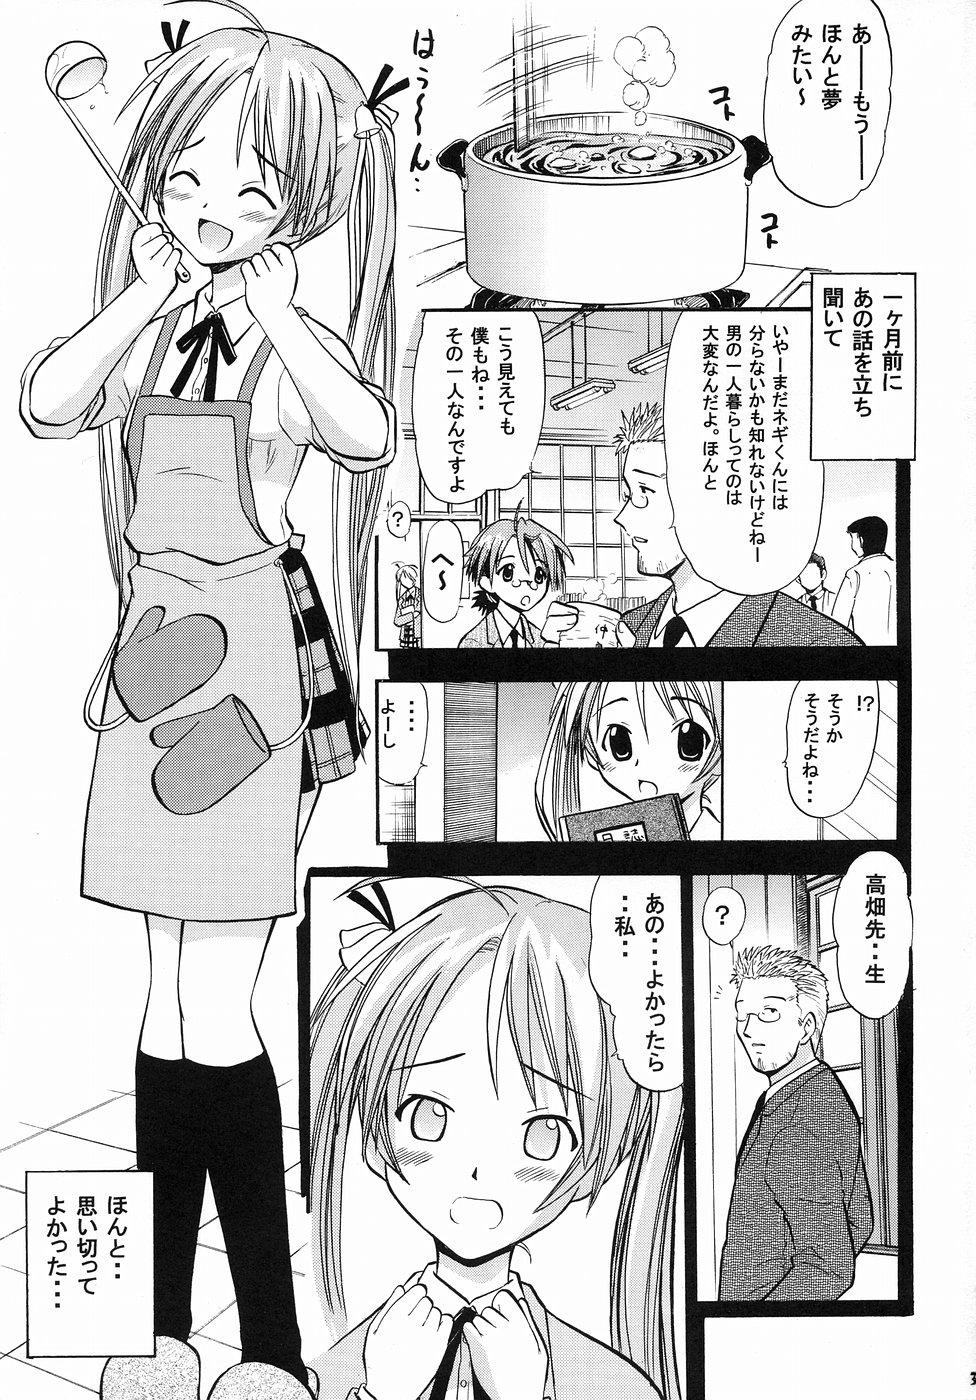 Gros Seins Asuna no Koi Suru Heart - Mahou sensei negima Urine - Page 2